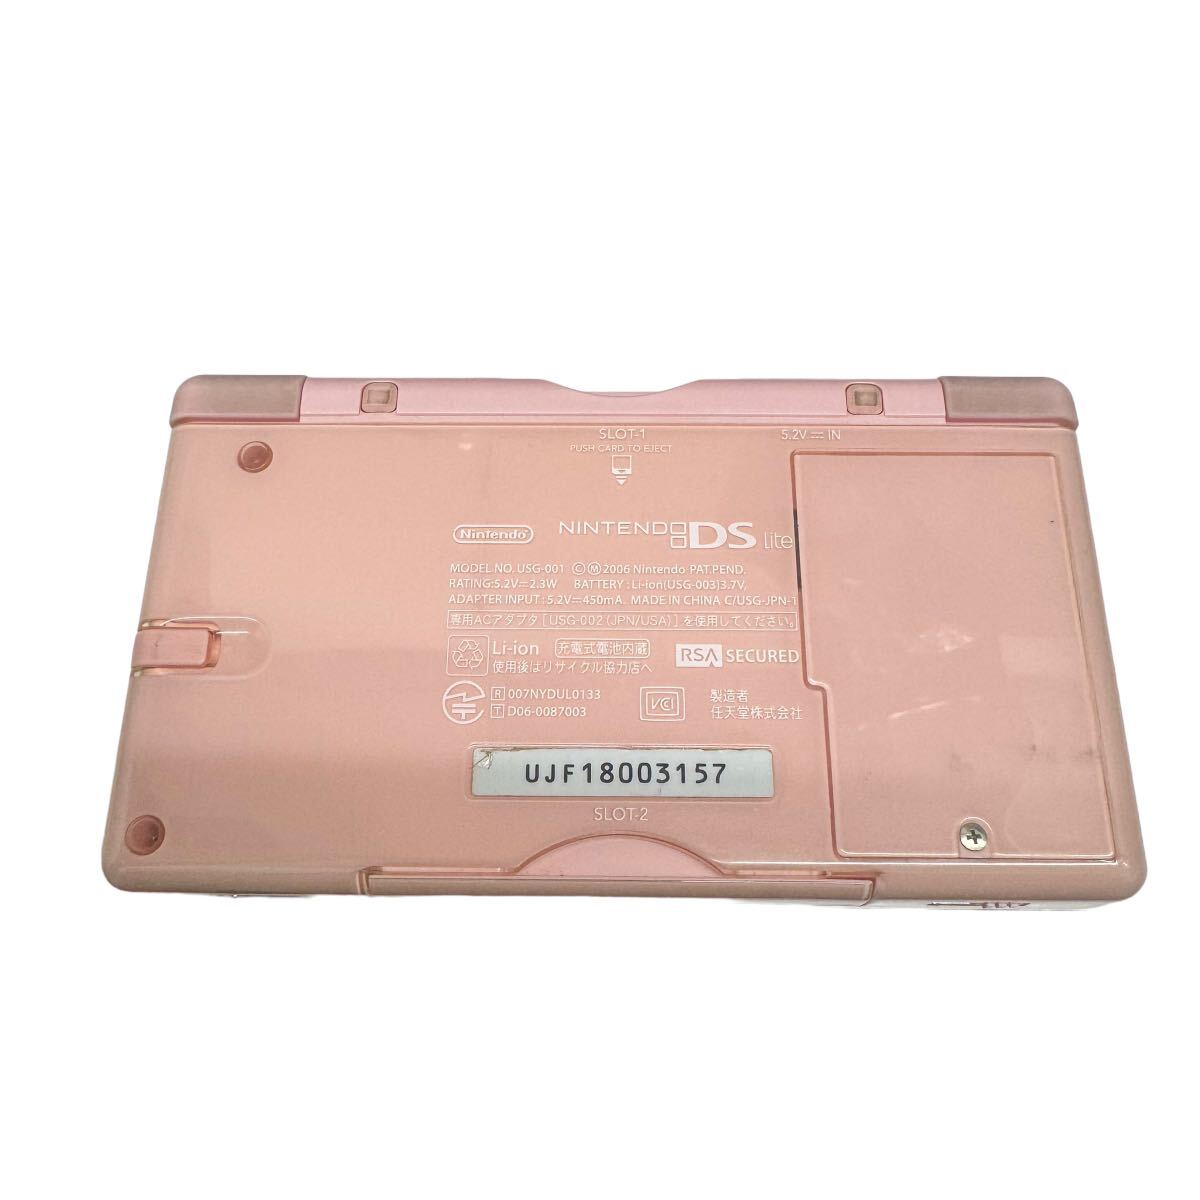 Nintendo DS Lite 任天堂 ニンテンドーDS Nintendo DS Lite USG-001 ピンク 本体 ジャンク品 どうぶつの森付属 セット販売 10161の画像4